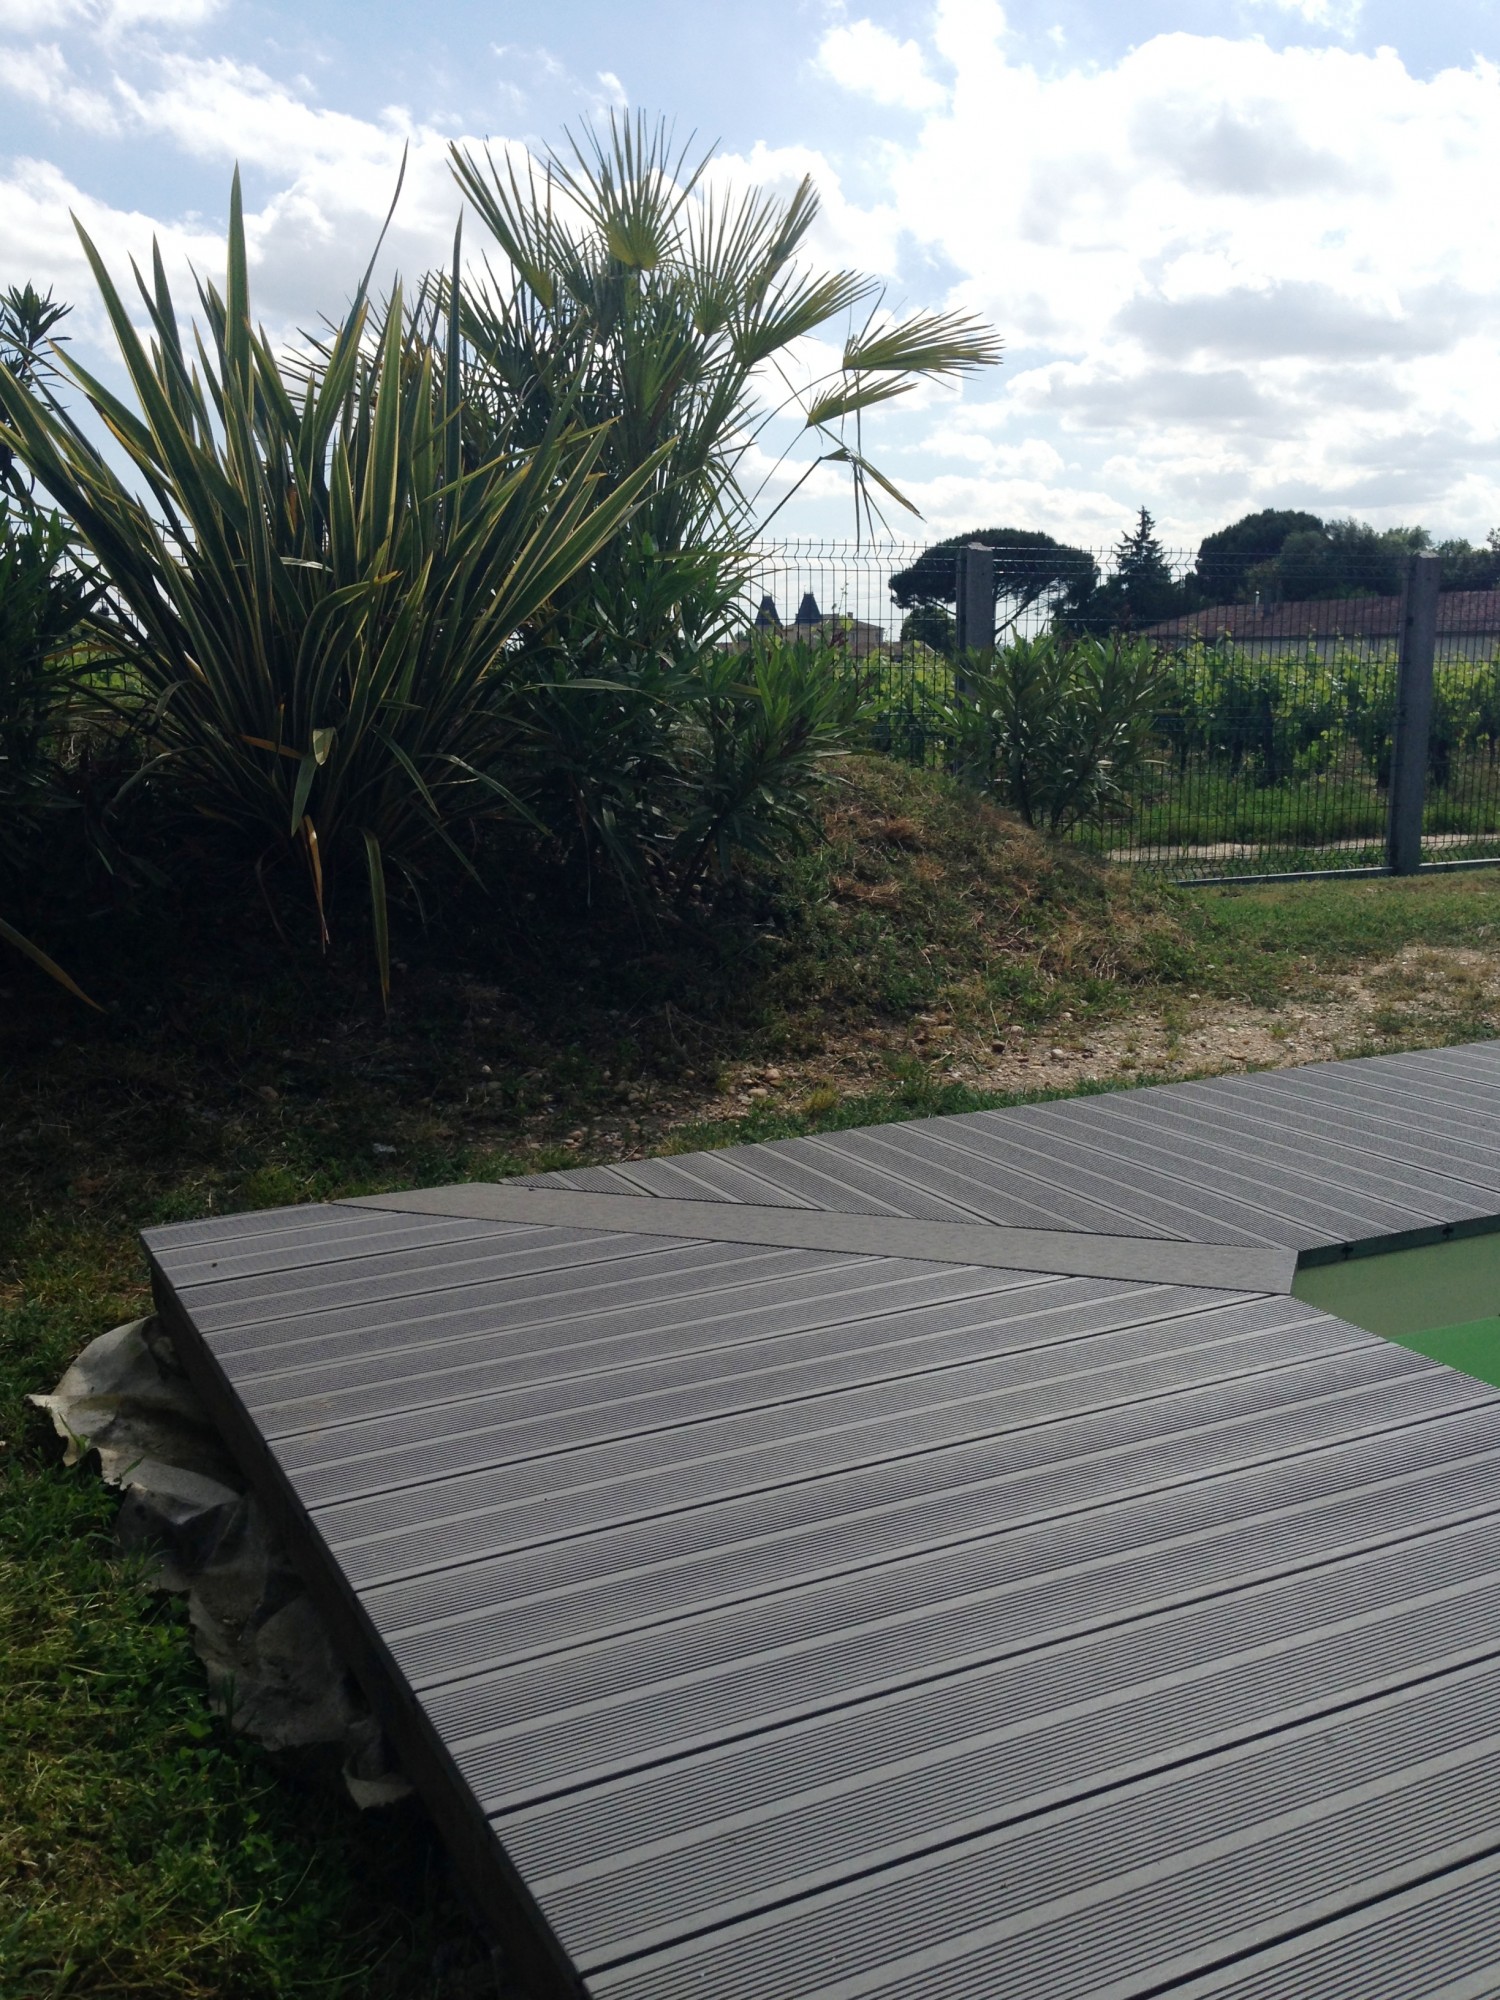 terrasse Composite Deck'O Zen gris.100%BOIS Mérignac près de Bordeaux Gironde 33 et Bidart près de Bayonne 64OIS